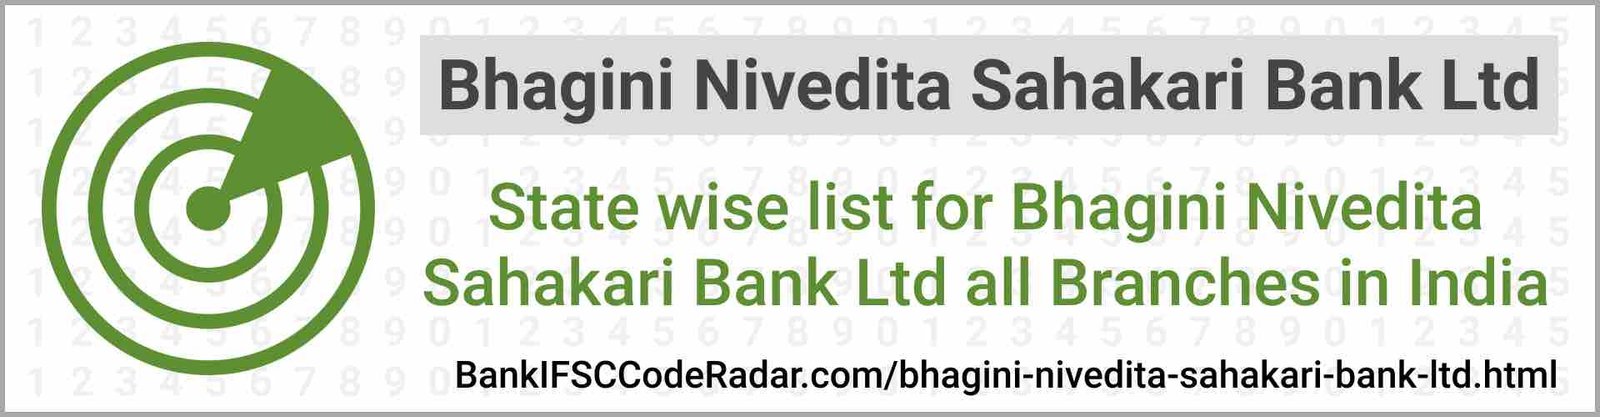 Bhagini Nivedita Sahakari Bank Ltd All Branches India